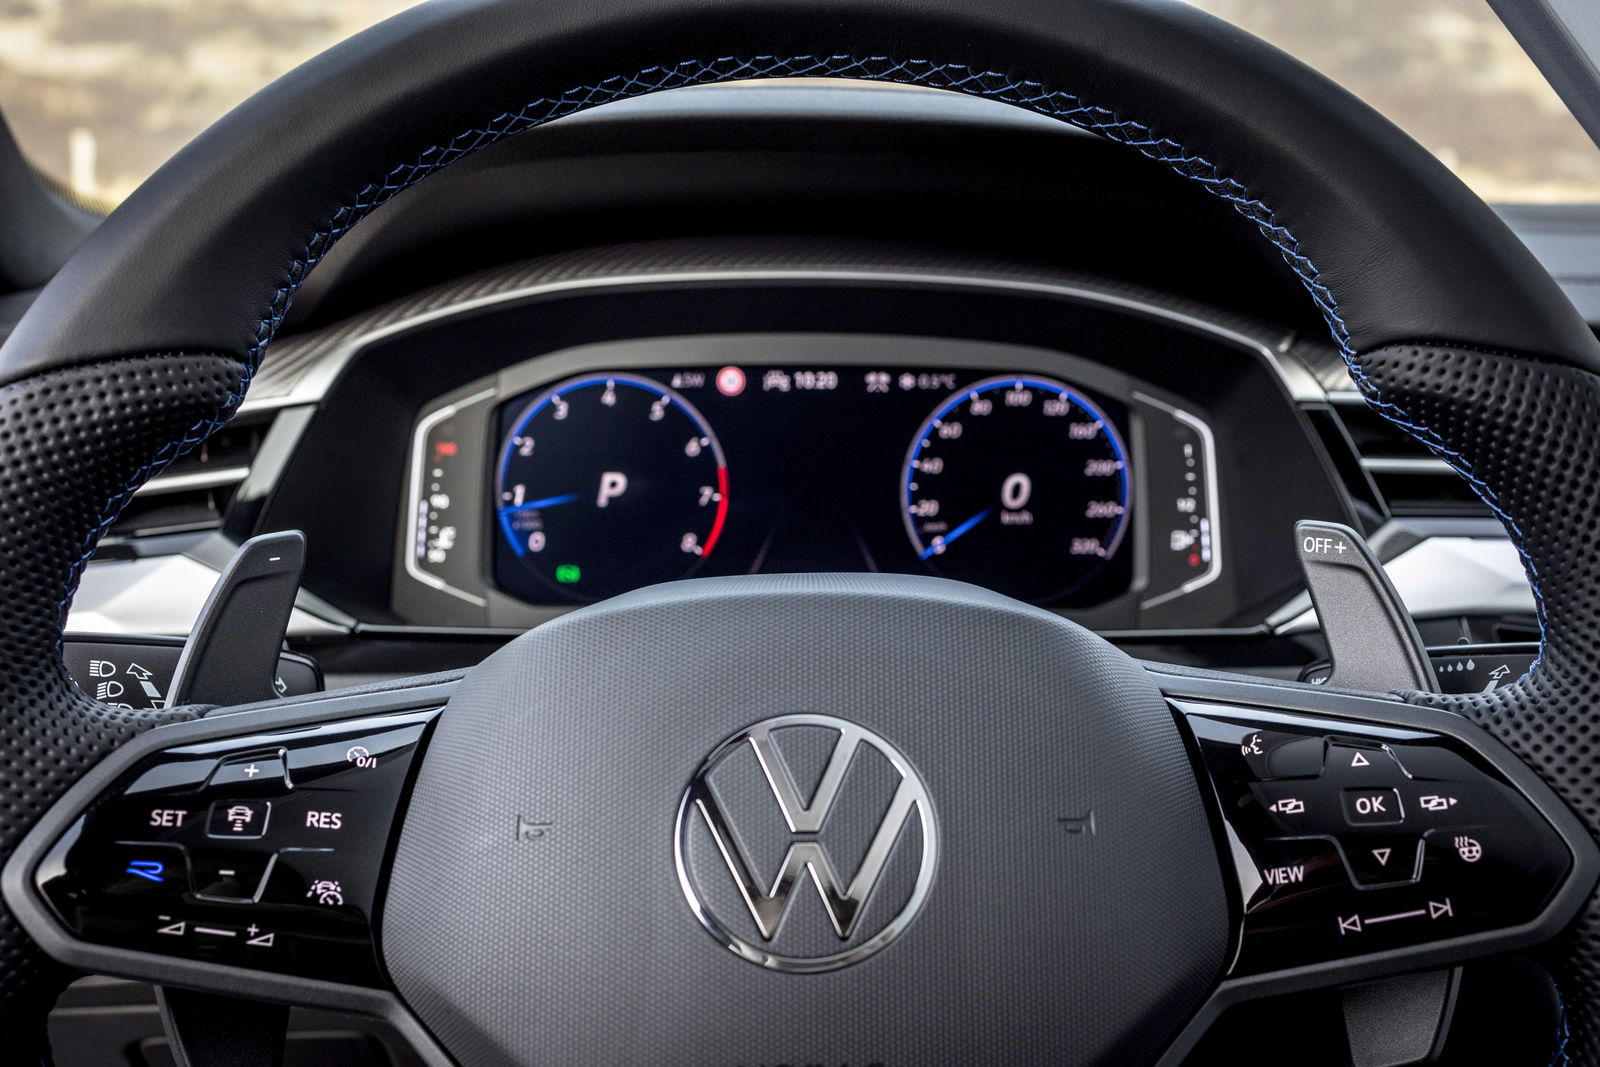 New 2020 Volkswagen Arteon Shooting Brake on sale now